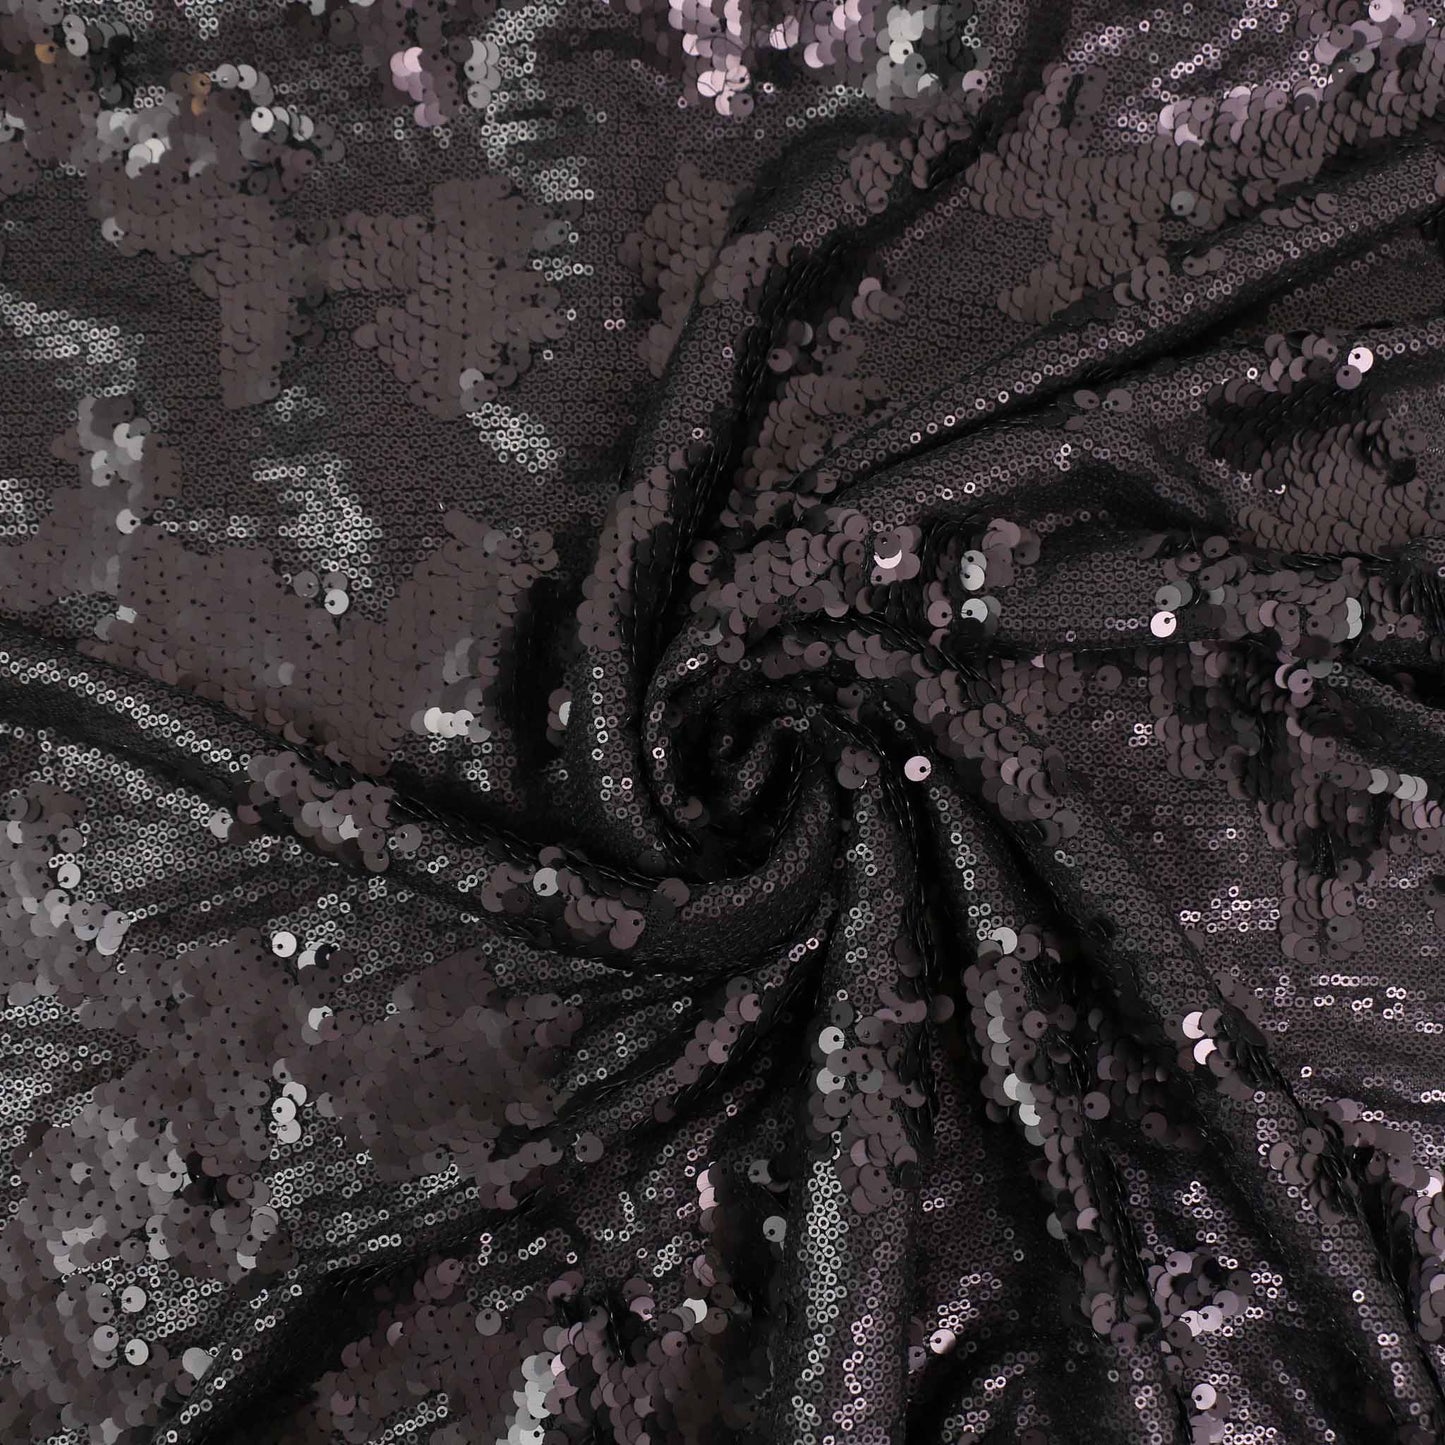 Sequin Fabric - Black, Mauve